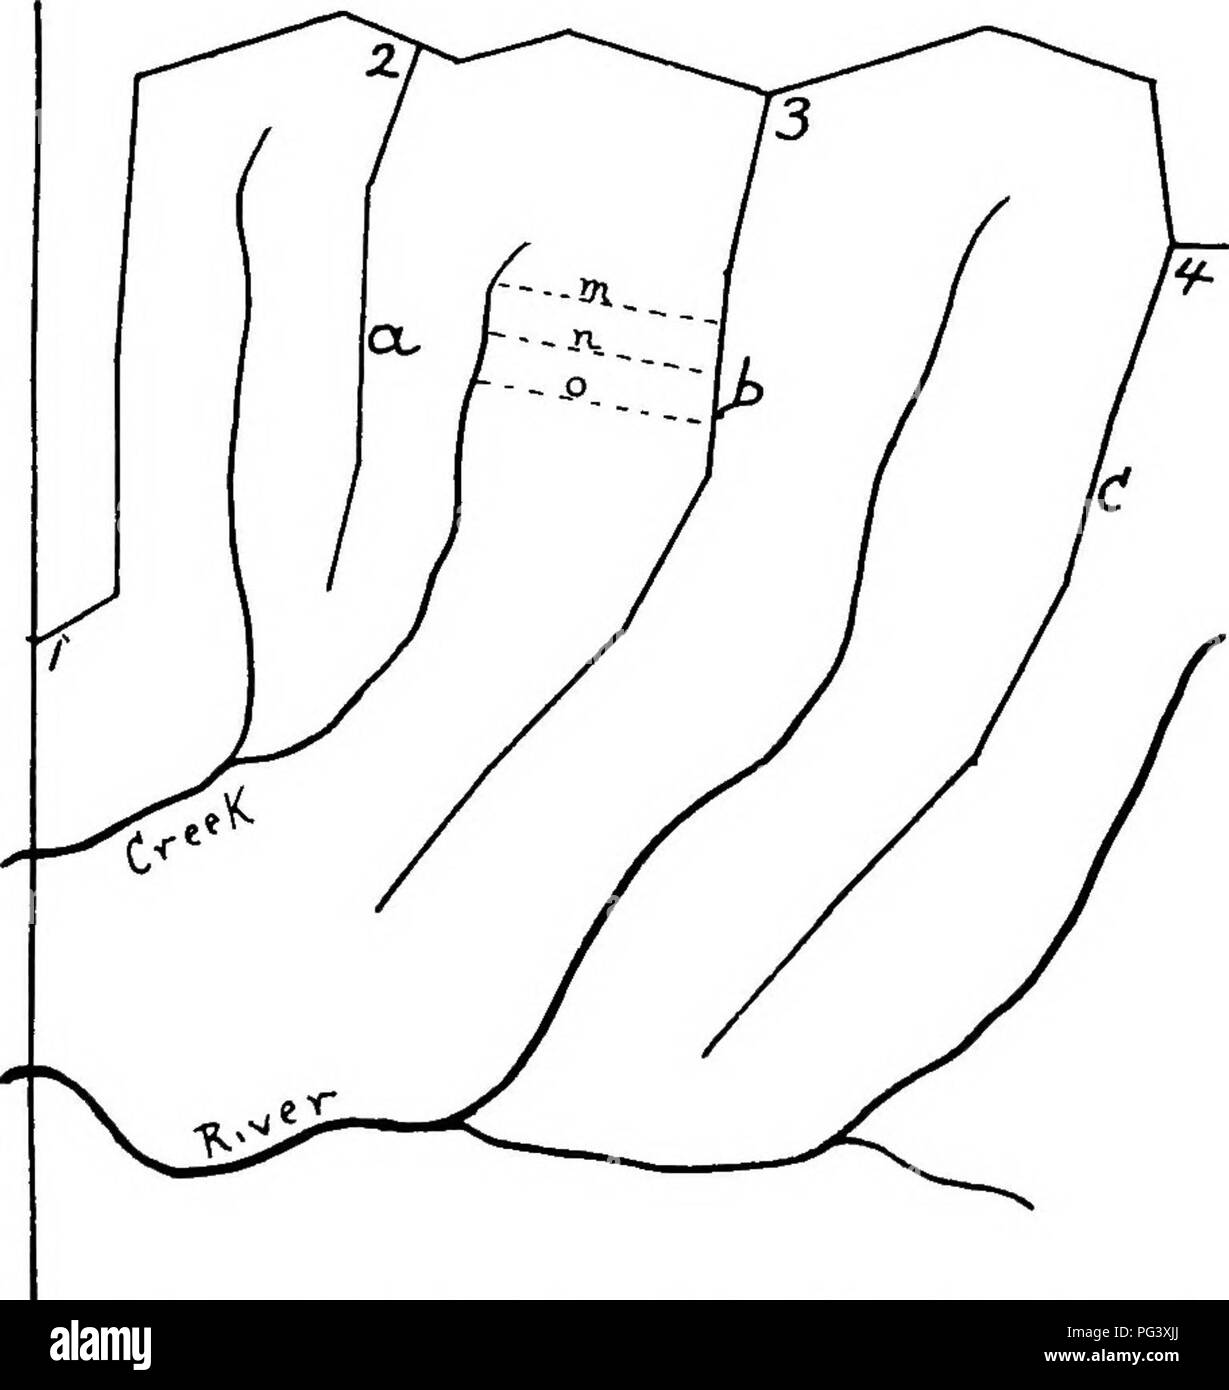 . Michigan manuale di silvicoltura ;. Le foreste e la silvicoltura. rOREST DIVISIONE 39 venute dell'indagine preliminare, come sopra indicato. Poiché il mapping e descrizione del lavoro viene fatto in dettaglio, questo metodo è una combinazione di ampio e intenso lavoro, di dubbia justi- fica.*. La figura i. Primario e Secondario di "controllo" o linee di base a. La linea I, 2, 3, 4 è qui th" linea principale, a, b, c sono le linee secondarie. Le linee tratteggiate m, n e o sono linee di corsa dell'equipaggio stima e descrivendo il legname. A I è una sezione ad angolo, qui utilizzato per "legare". b. Uso e valore della Subdivi Foto Stock